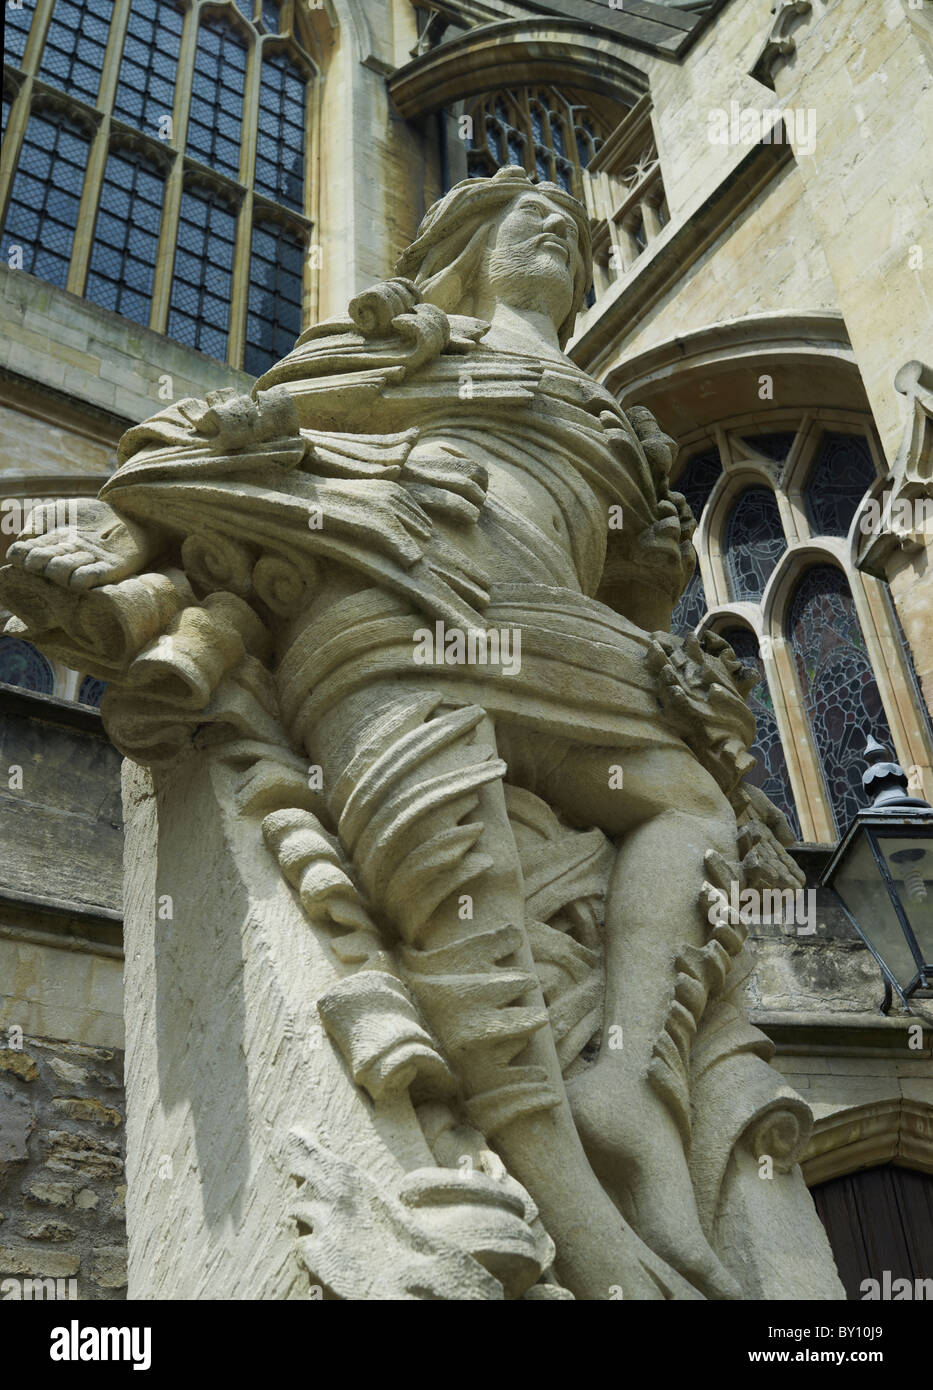 La Abadía de Bath, Somerset, estatua de Cristo resucitado, de 2000, por el escultor local Laurence Tindall Foto de stock